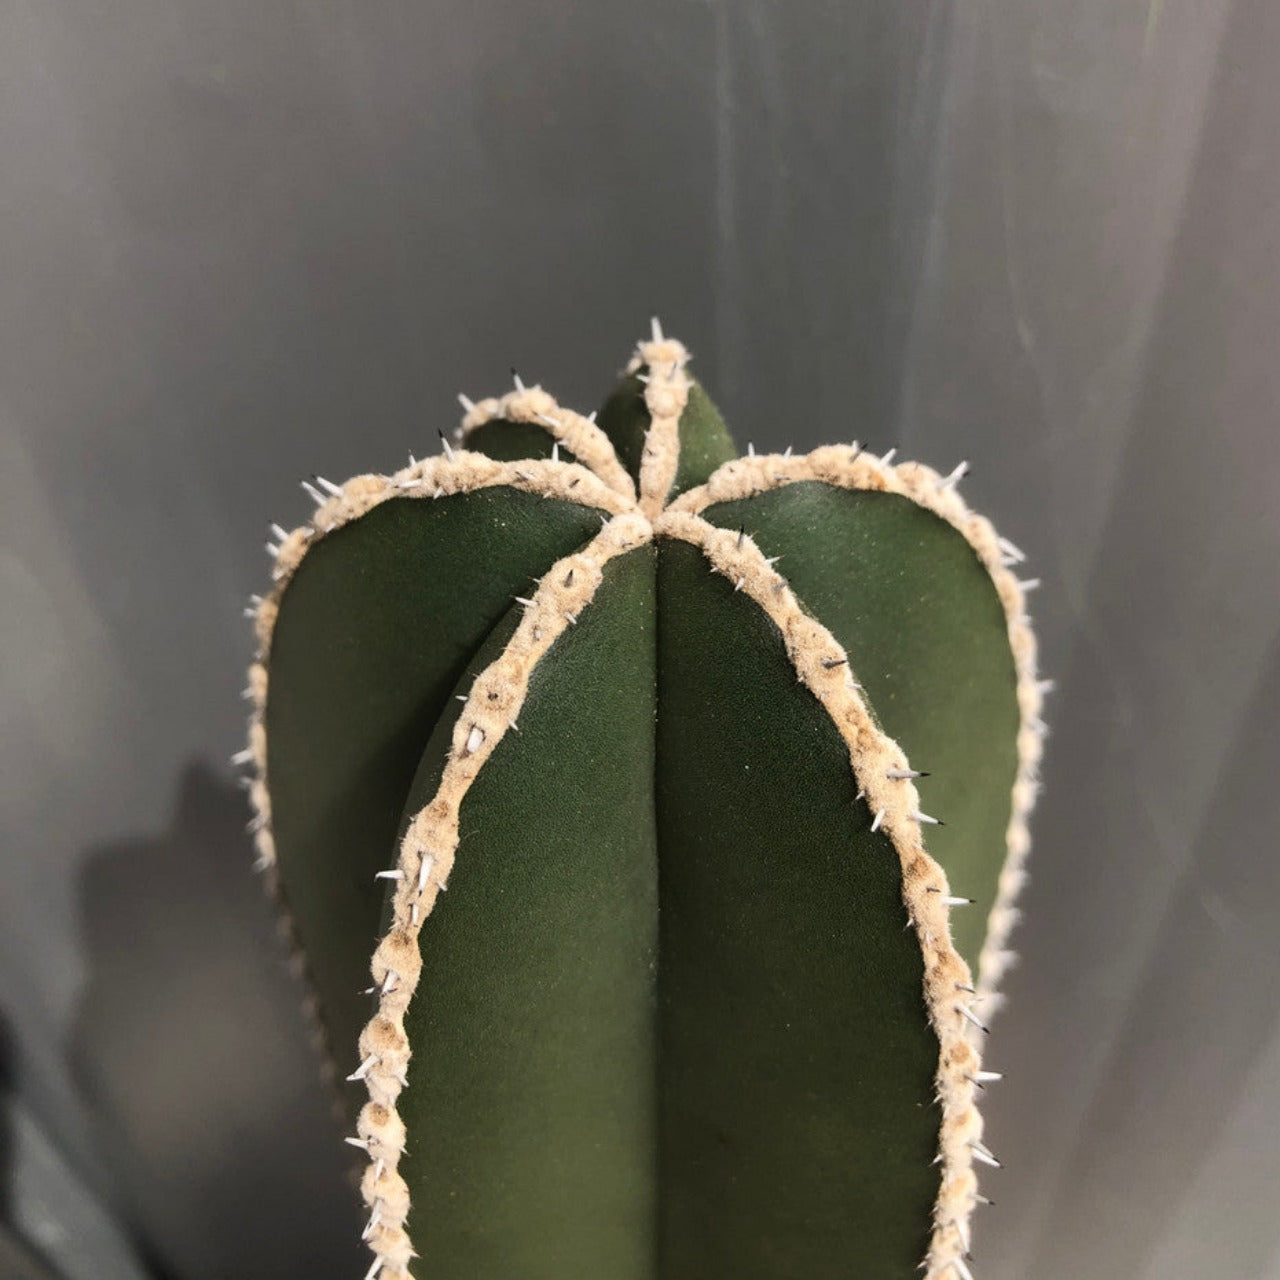 Lophocereus Marginatus (Mexican Fencepost Cactus)